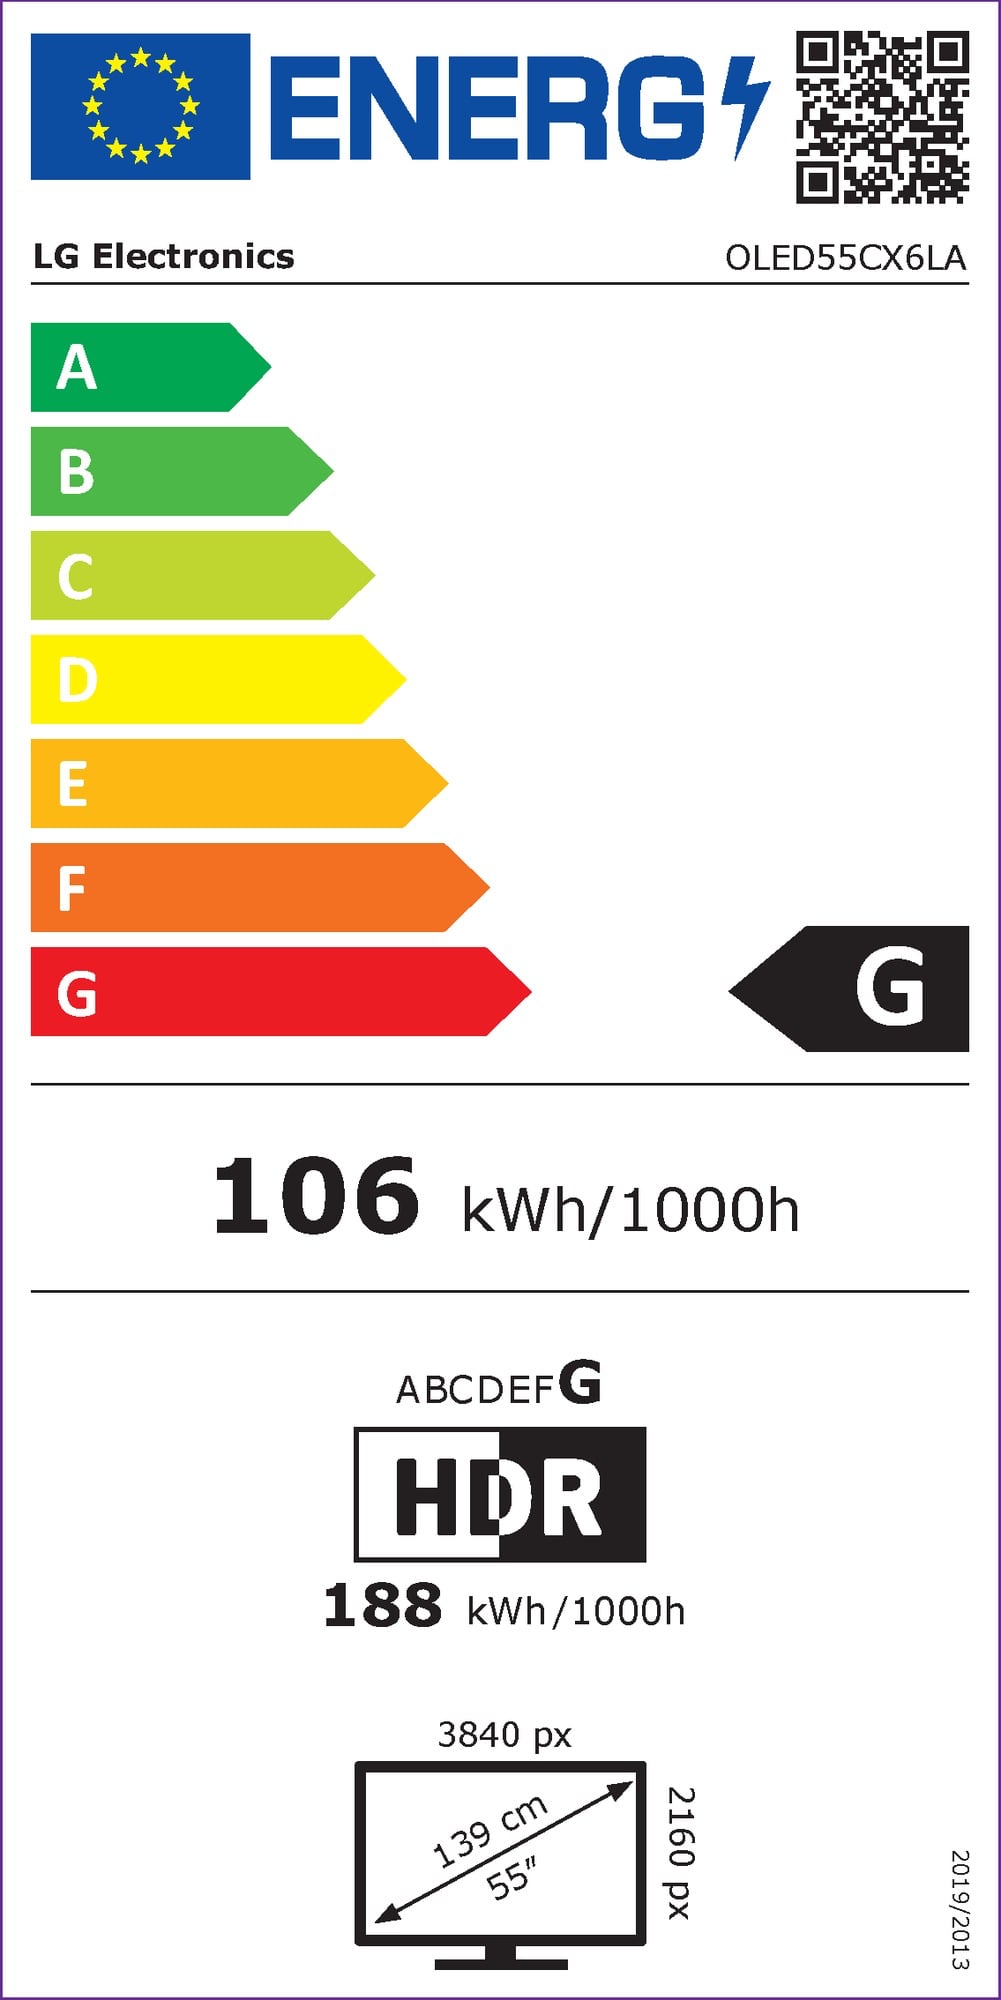 LG OLED energy consumption